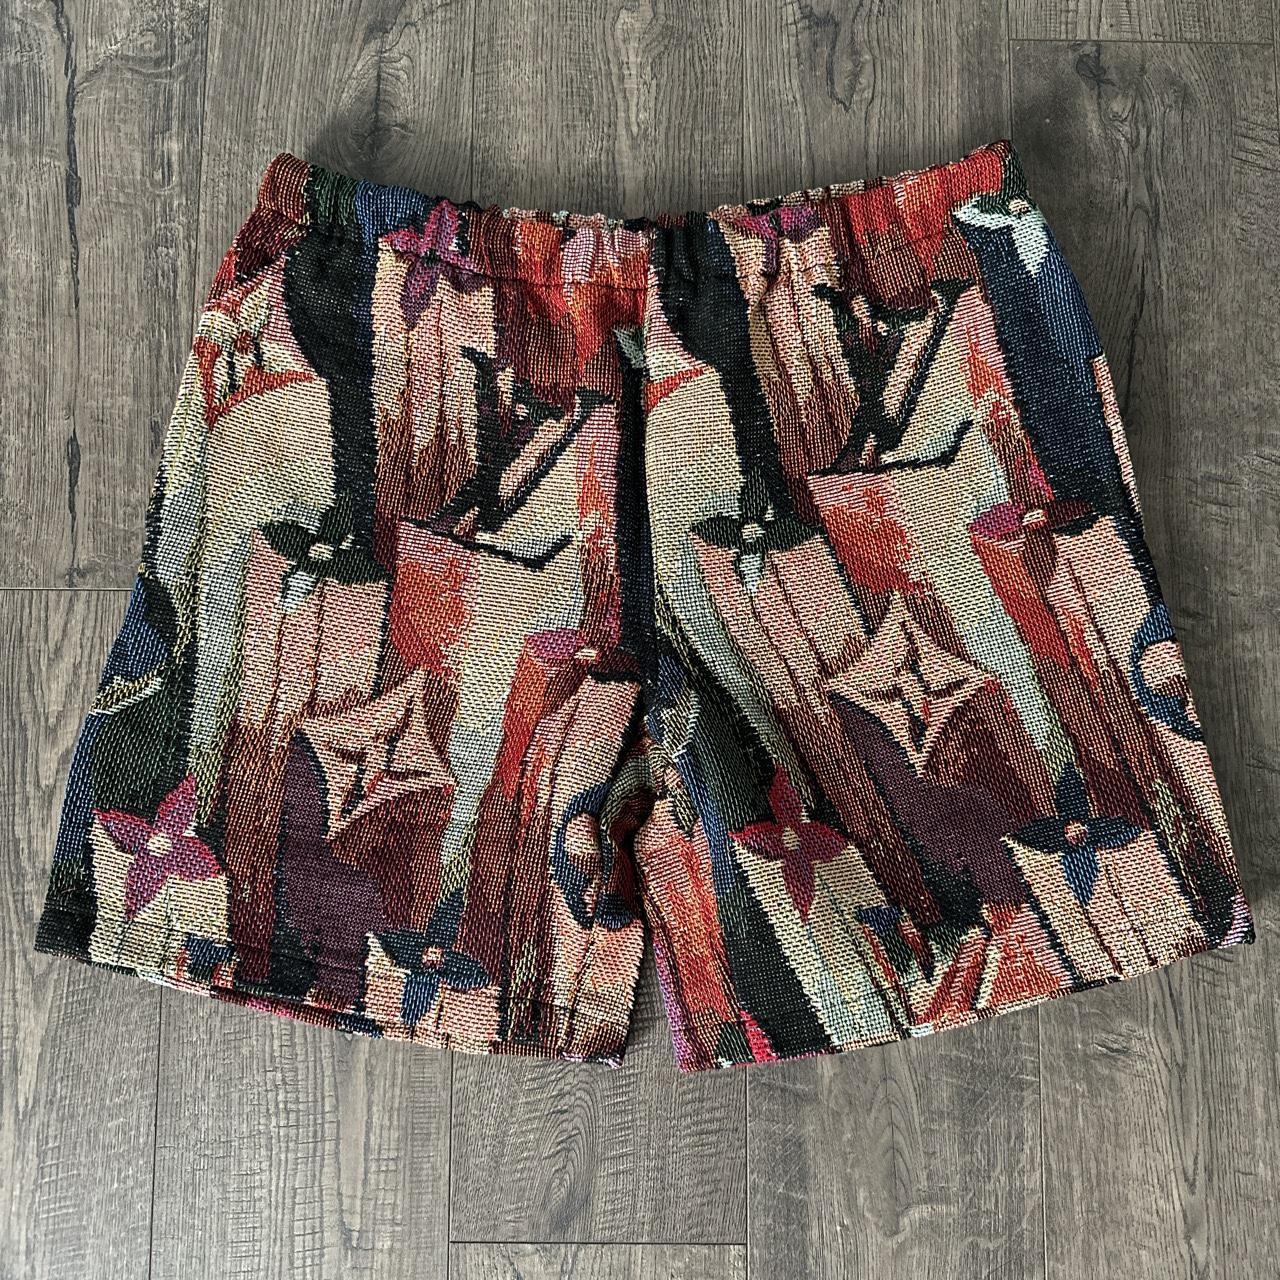 Louis Vuitton Shorts for Men for sale